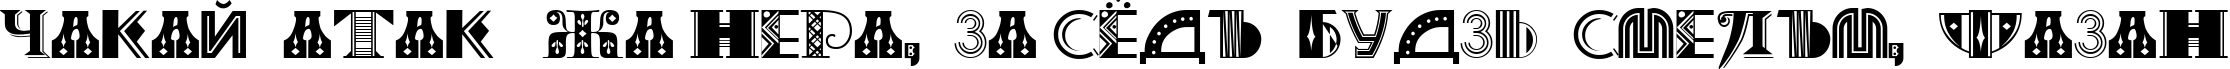 Пример написания шрифтом Art-Decoretta текста на белорусском